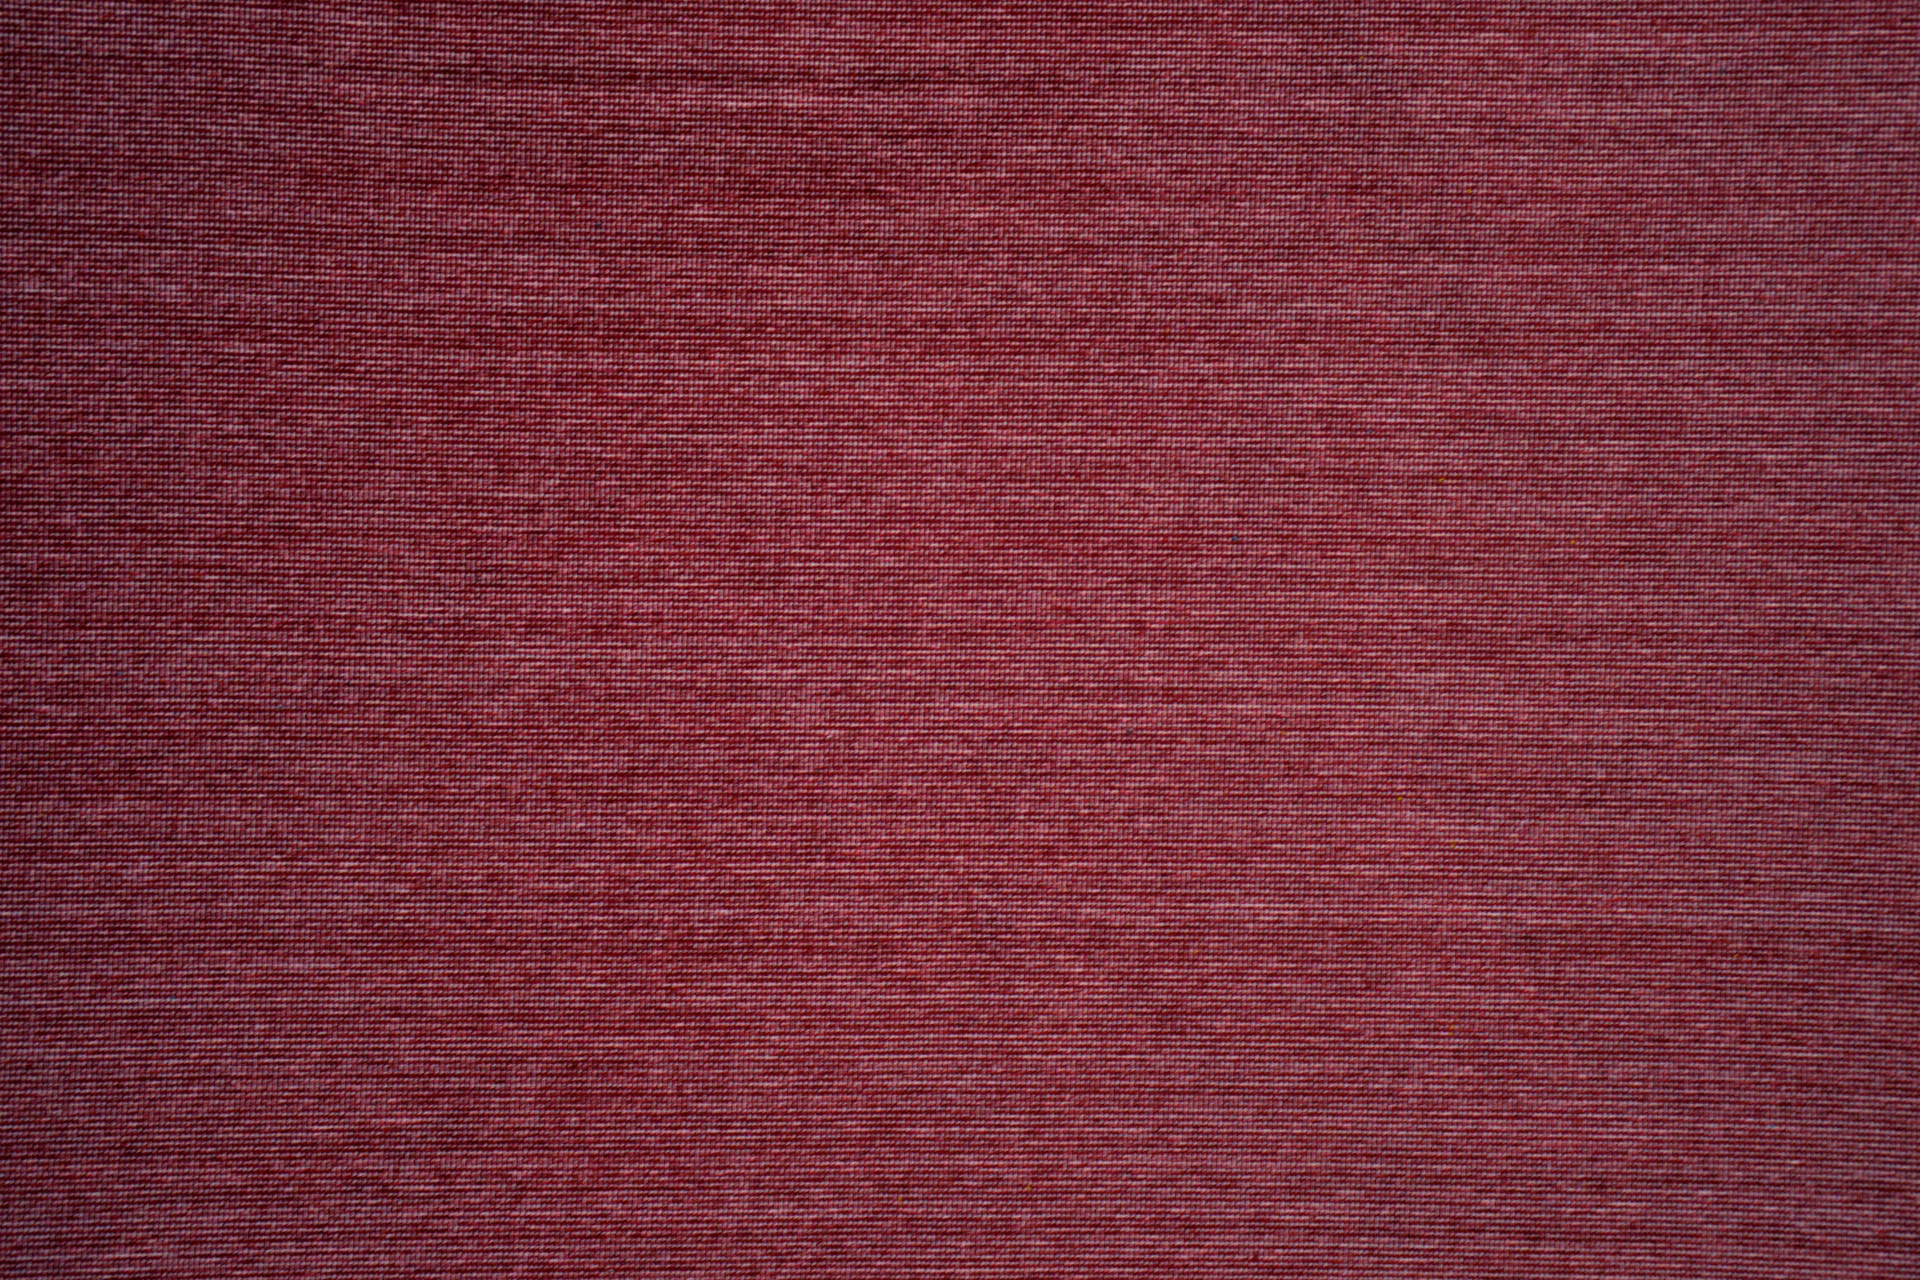 Lima tissu ameublement faux uni Aquaclean anti-tâche et lavable de Casal, pour chaise, fauteuil, canapé et rideaux, vendu par la rime des matieres, bon plan tissu